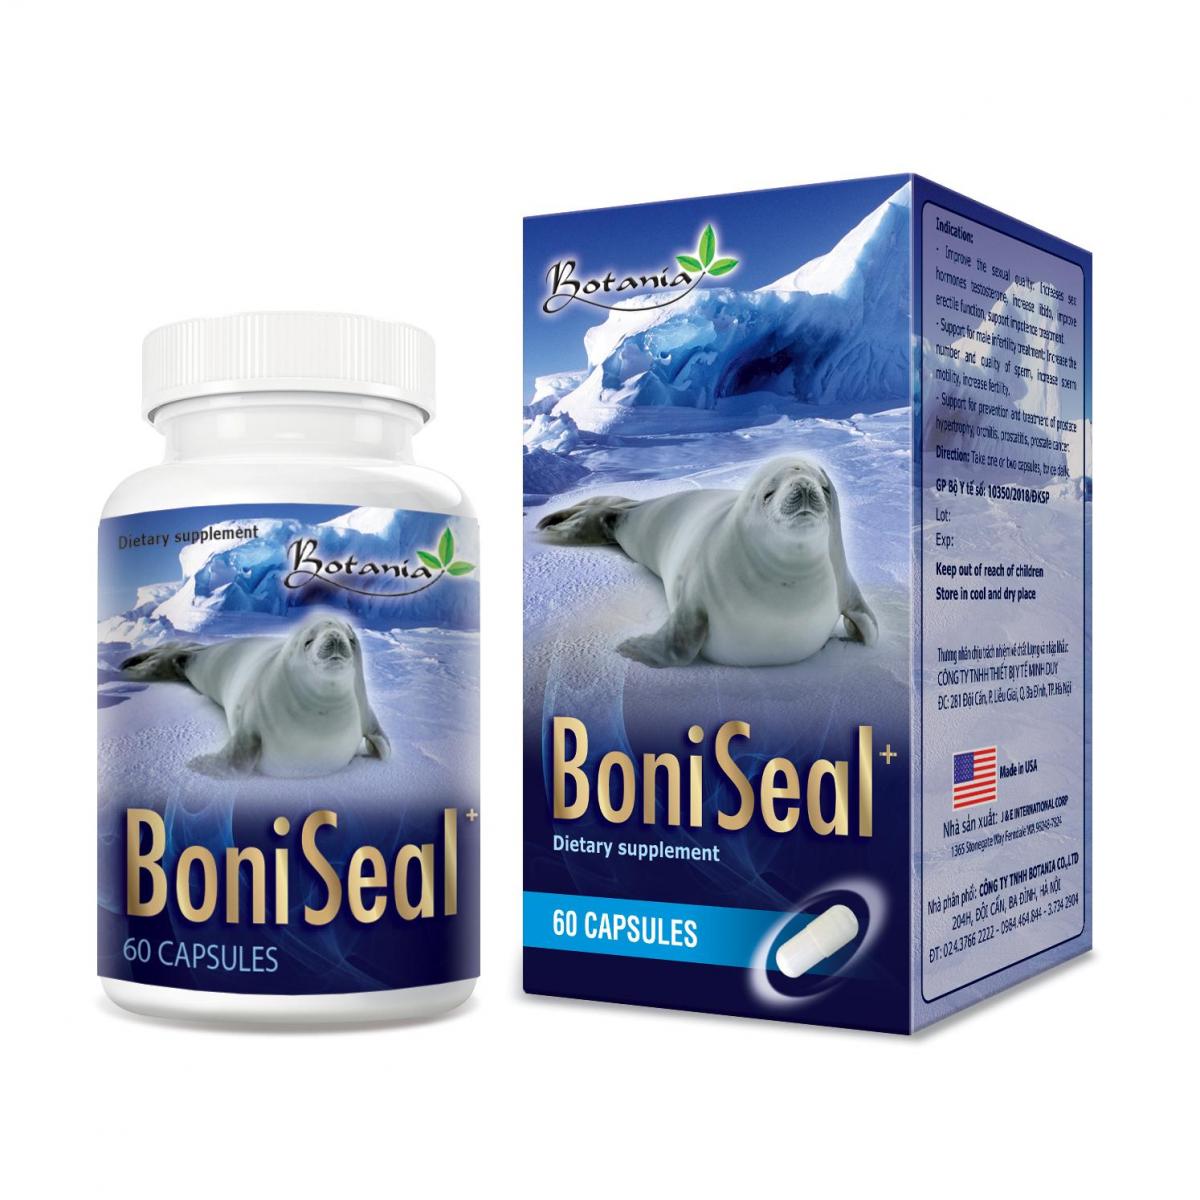 BoniSeal + - Sản phẩm có tác dụng toàn diện giúp  tăng cường sinh lý nam